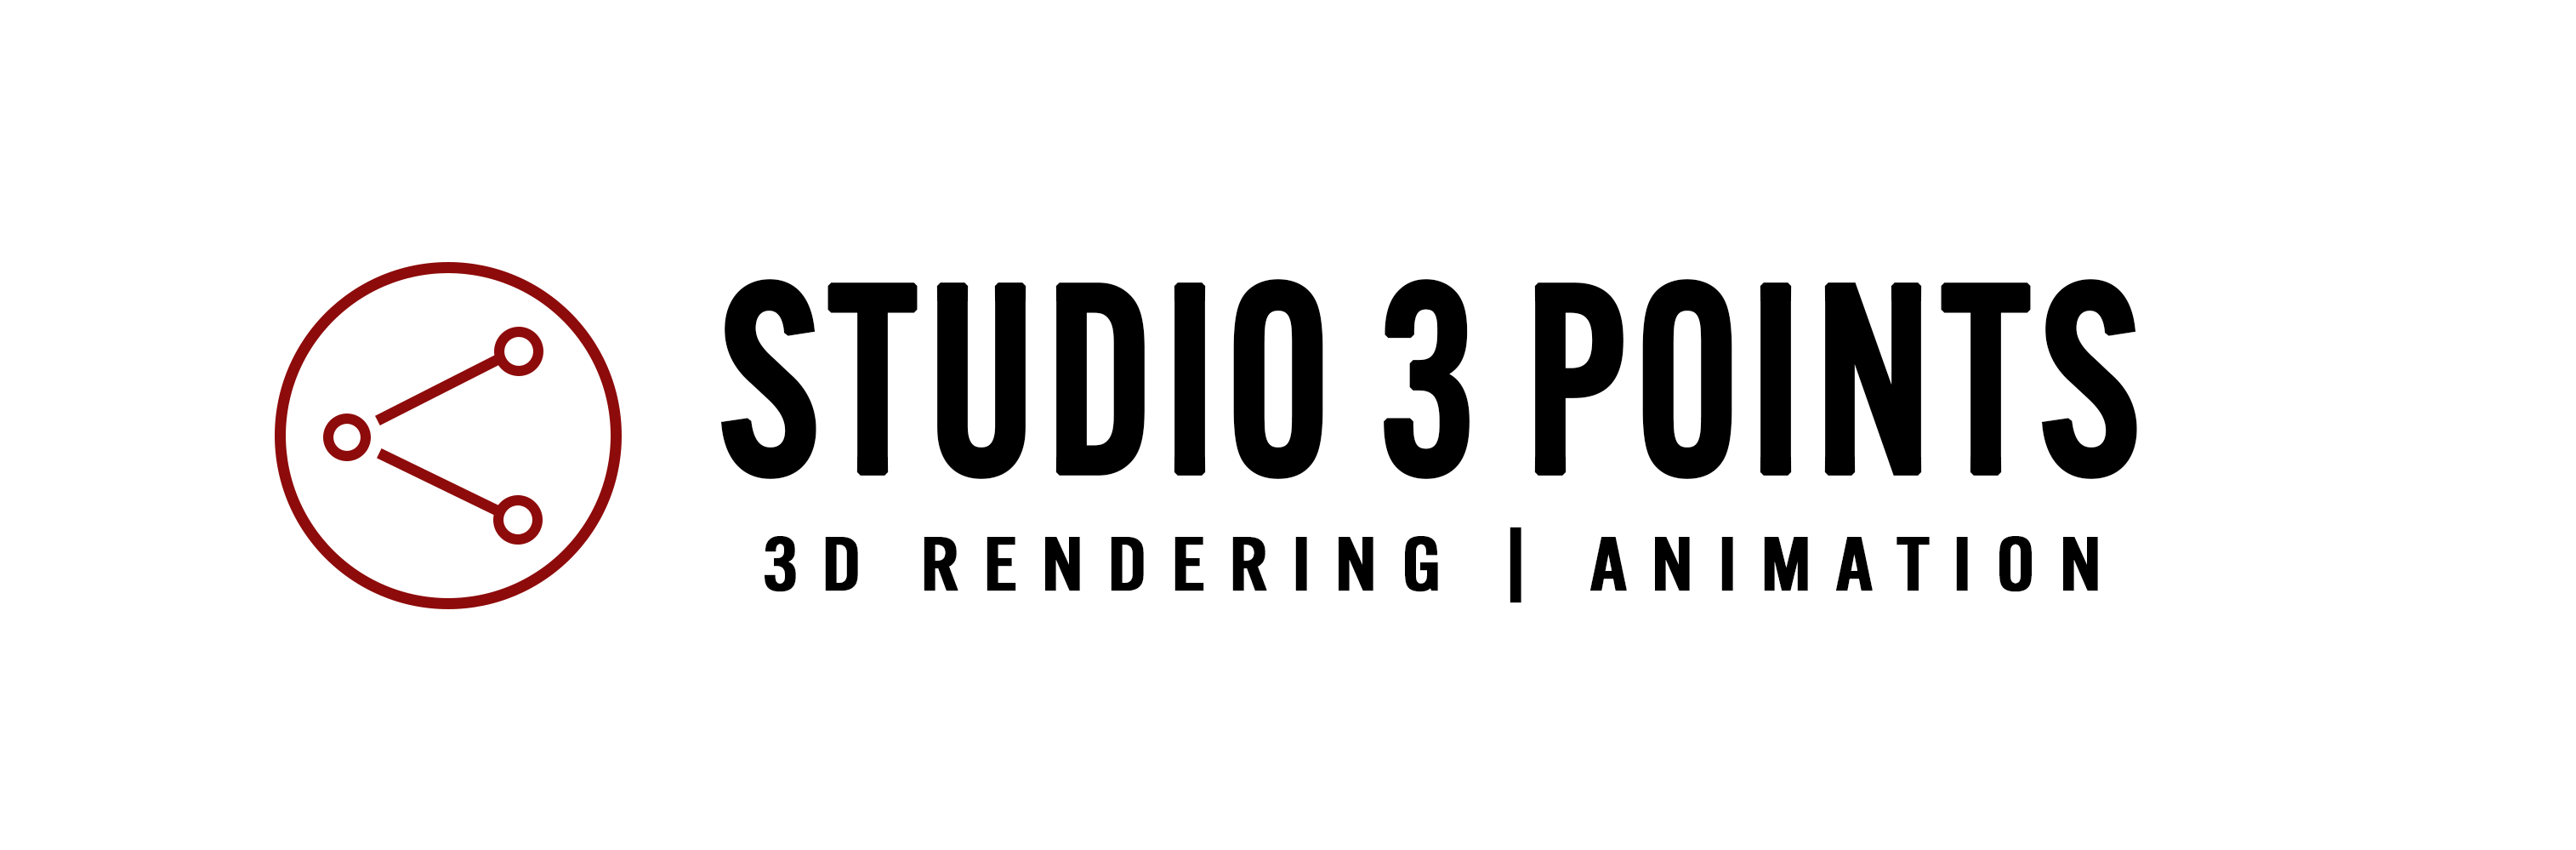 Studio 3 Points